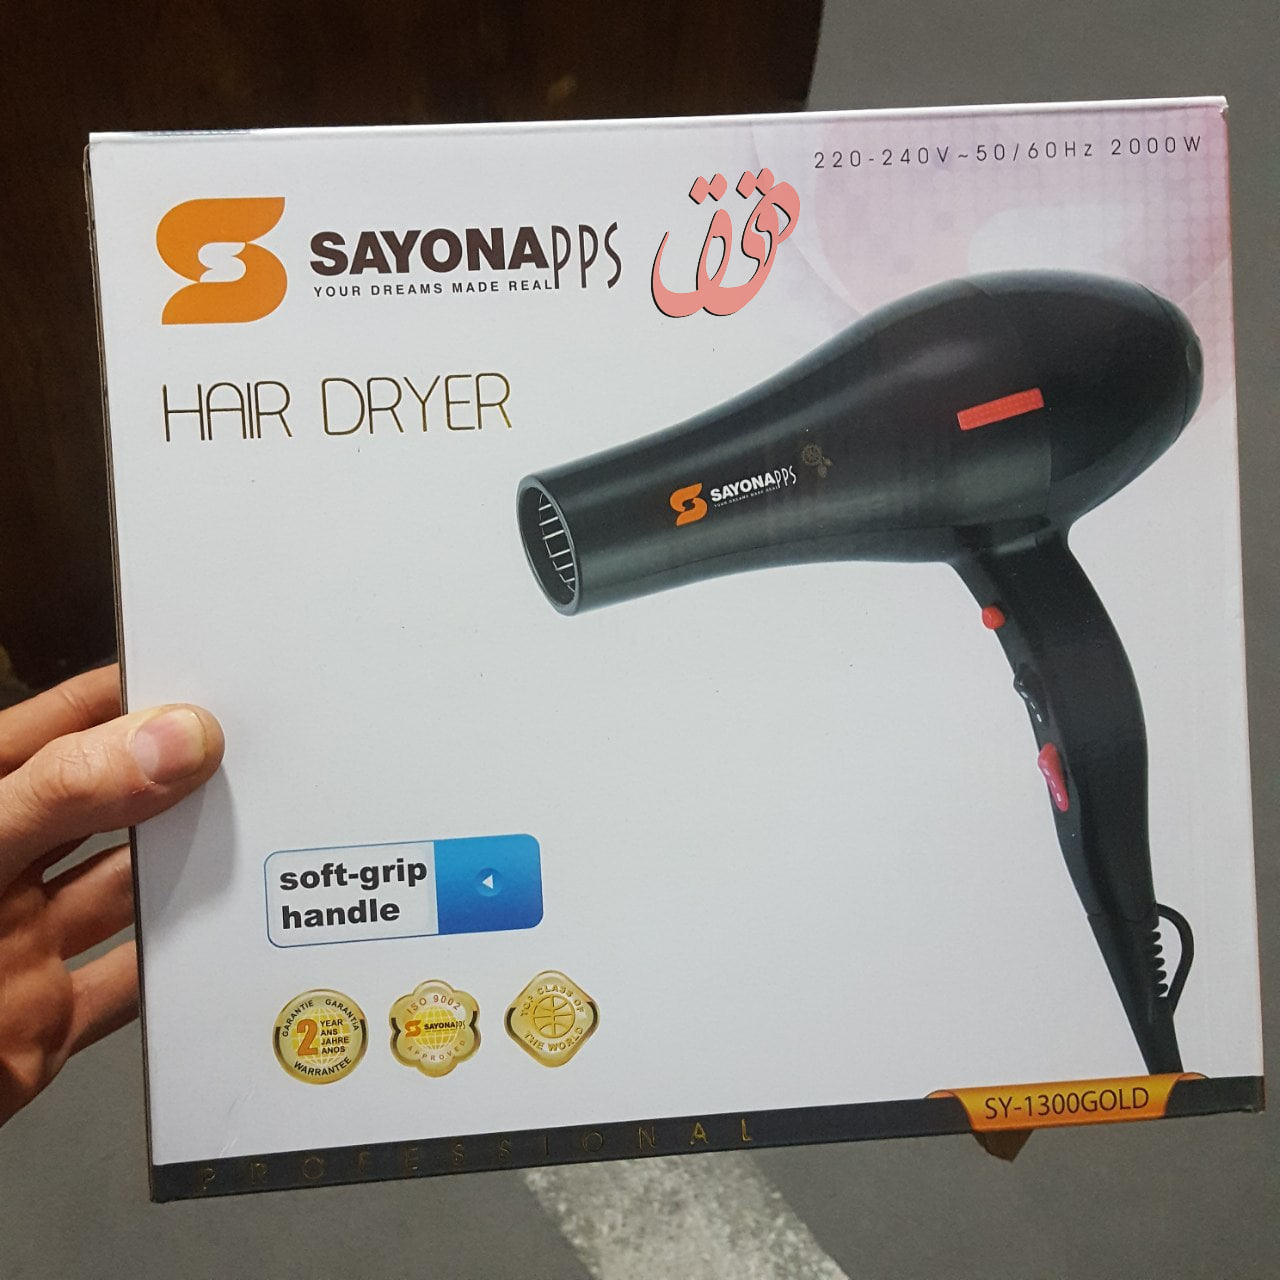  خرید تجهیزات زیبایی - دستگاه سشوار خانگی سایونا 2000 به قیمت مناسب